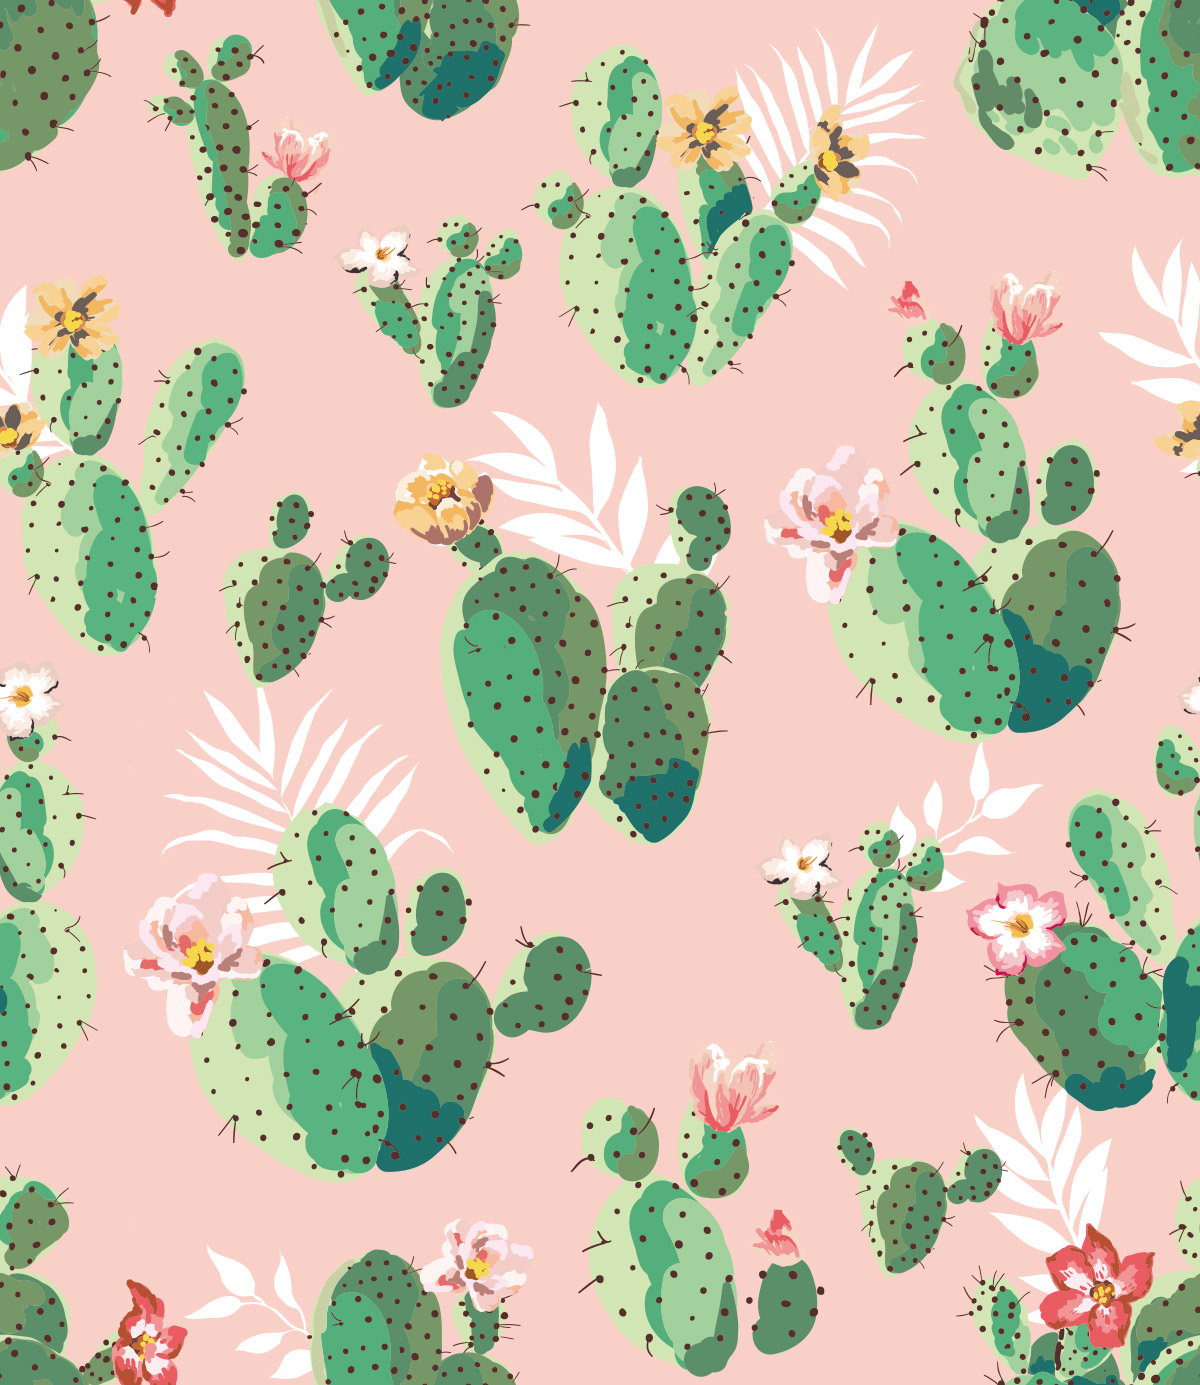 无缝可爱仙人掌印花图案背景矢量设计素材Cactus patt